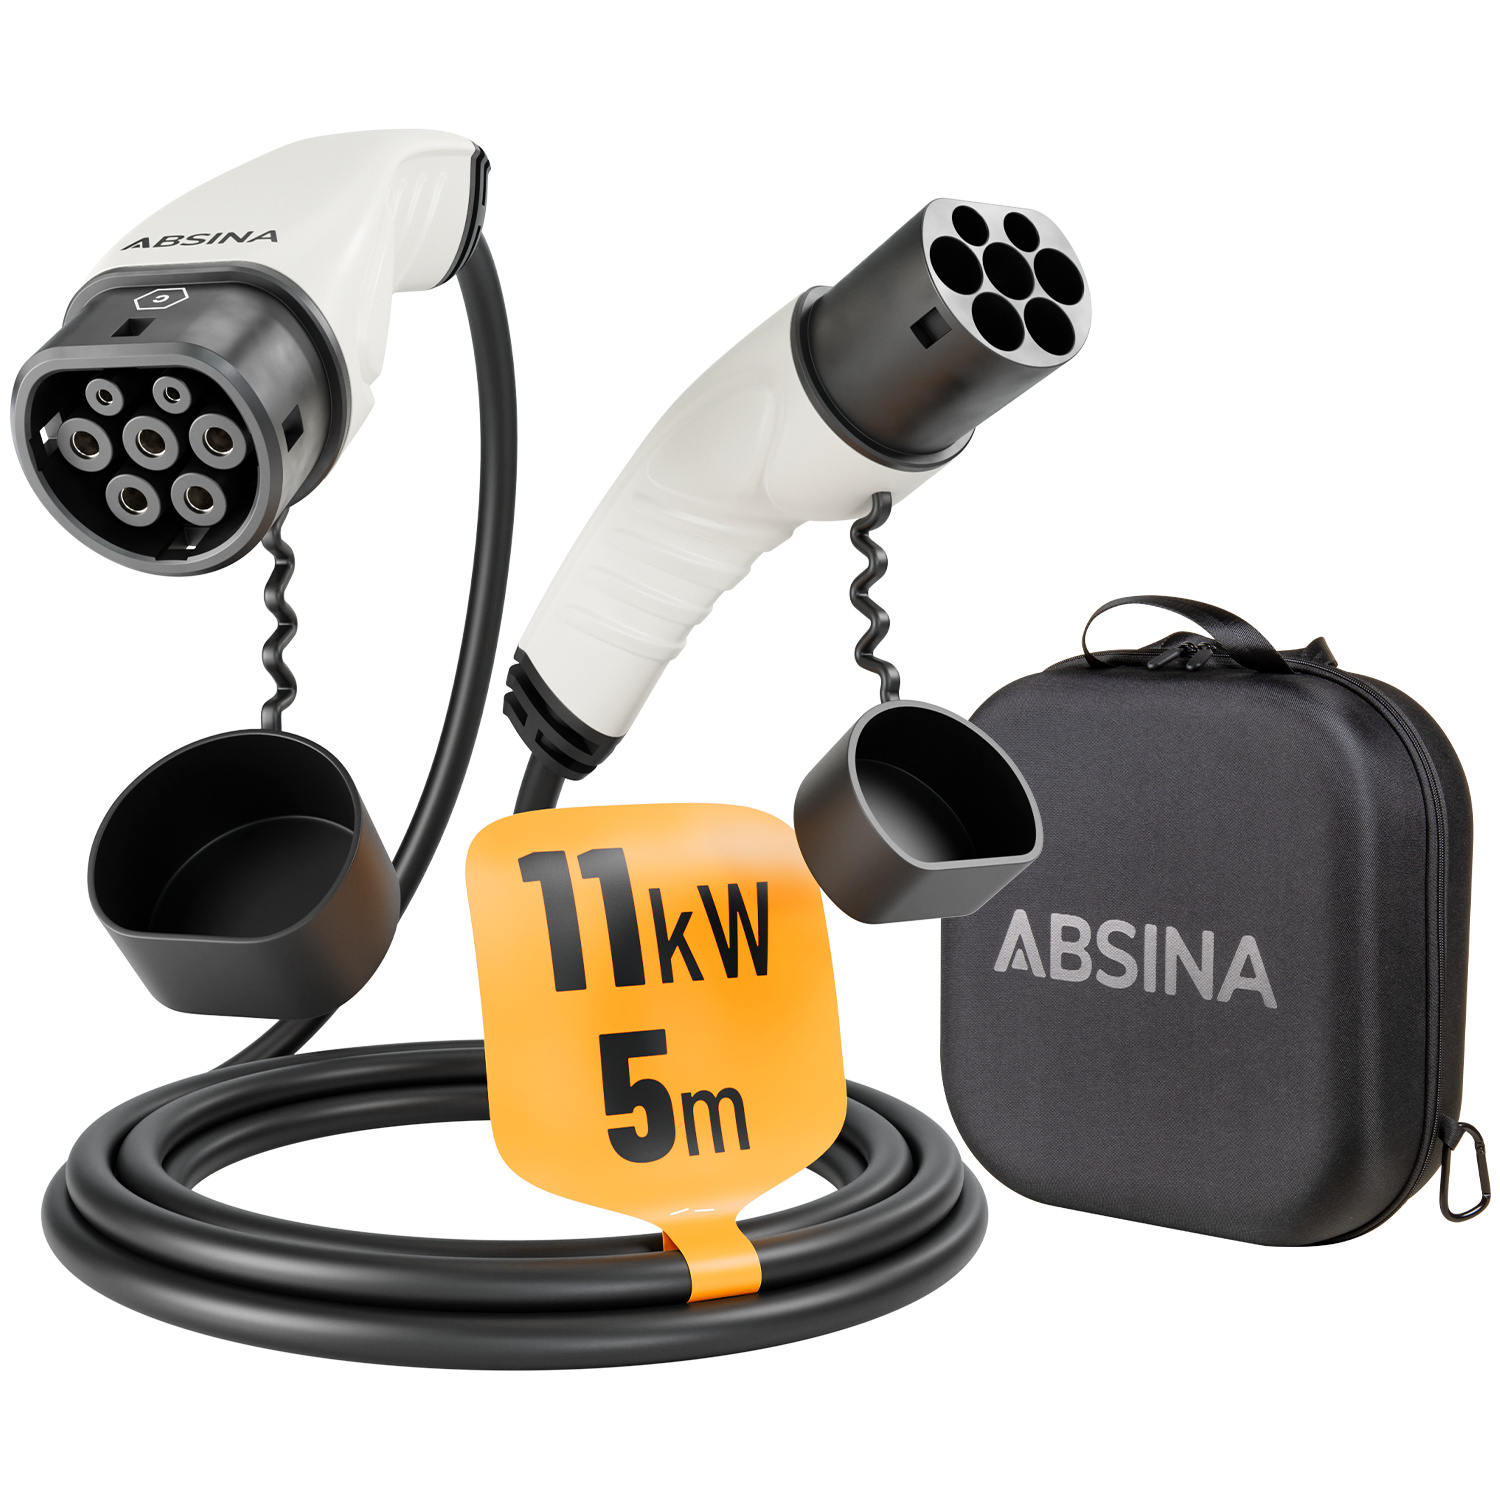 ABSINA Typ 2 Ladekabel 11kW & 16A für Hybrid